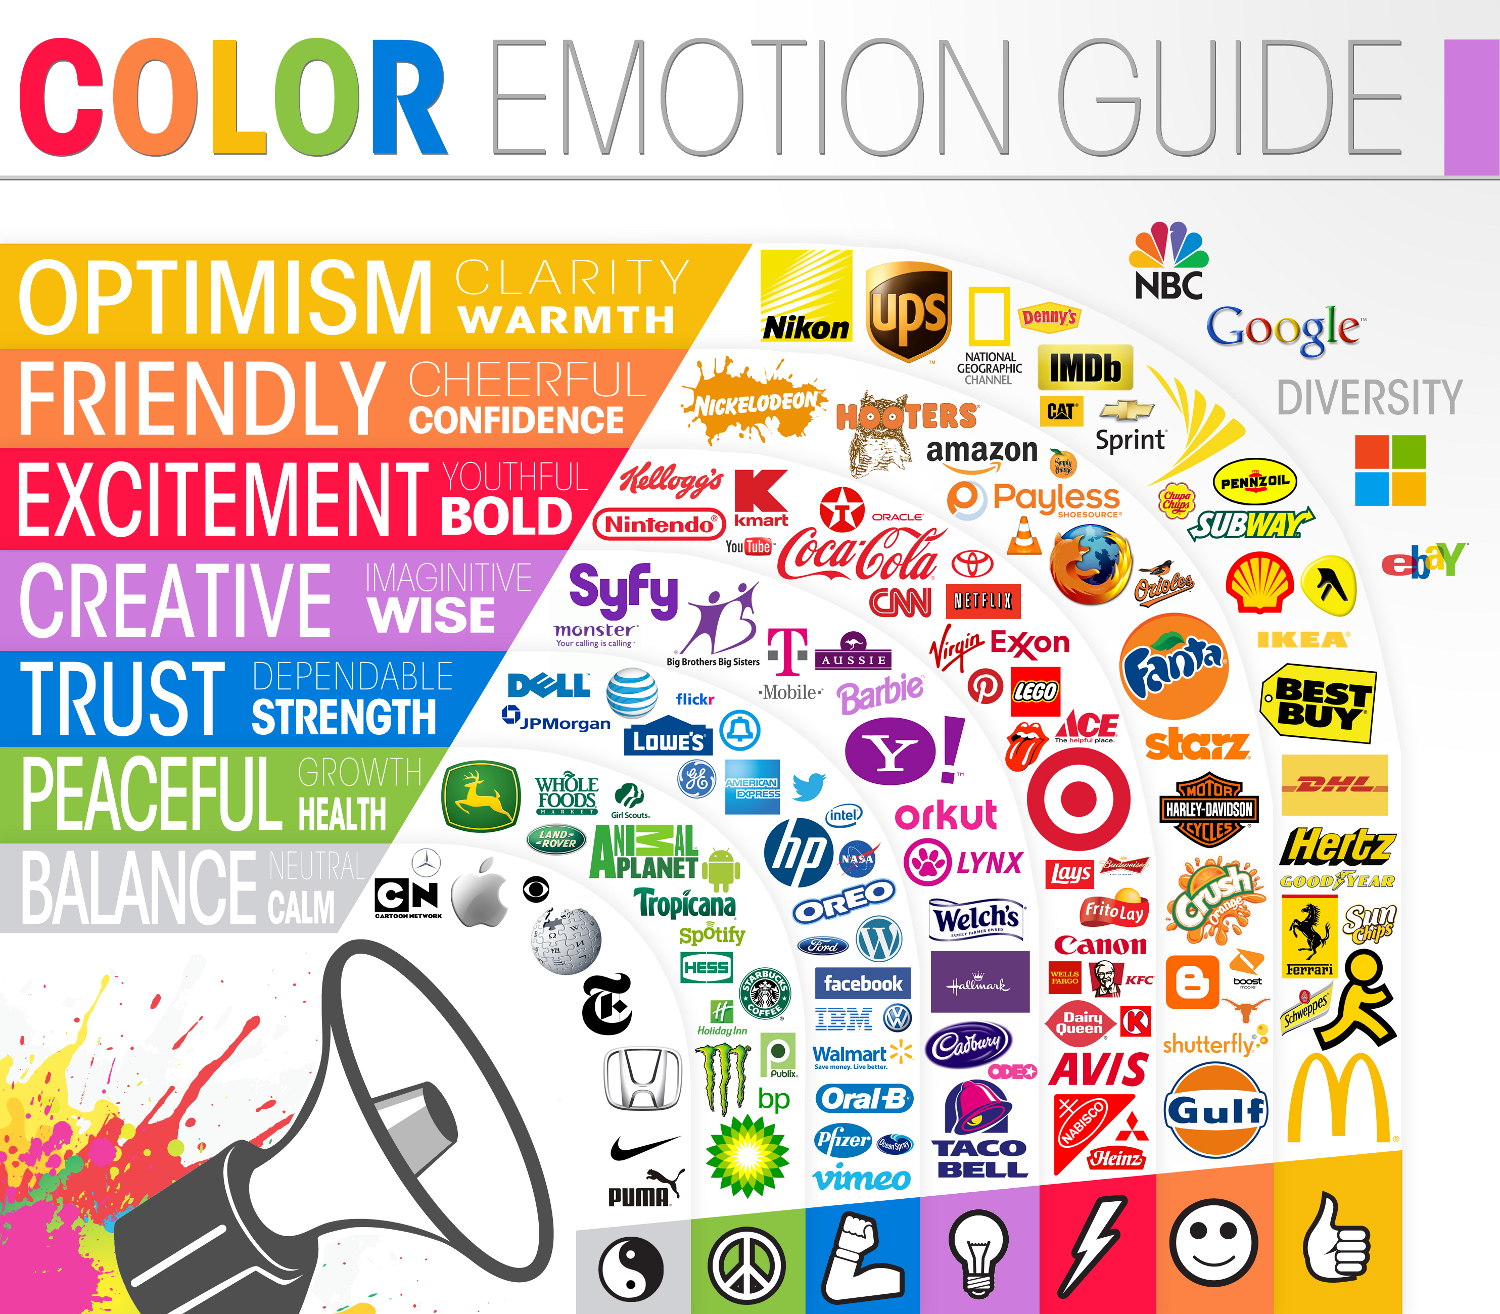 Die unterschiedlichen emotionalen Reaktionen auf Farben